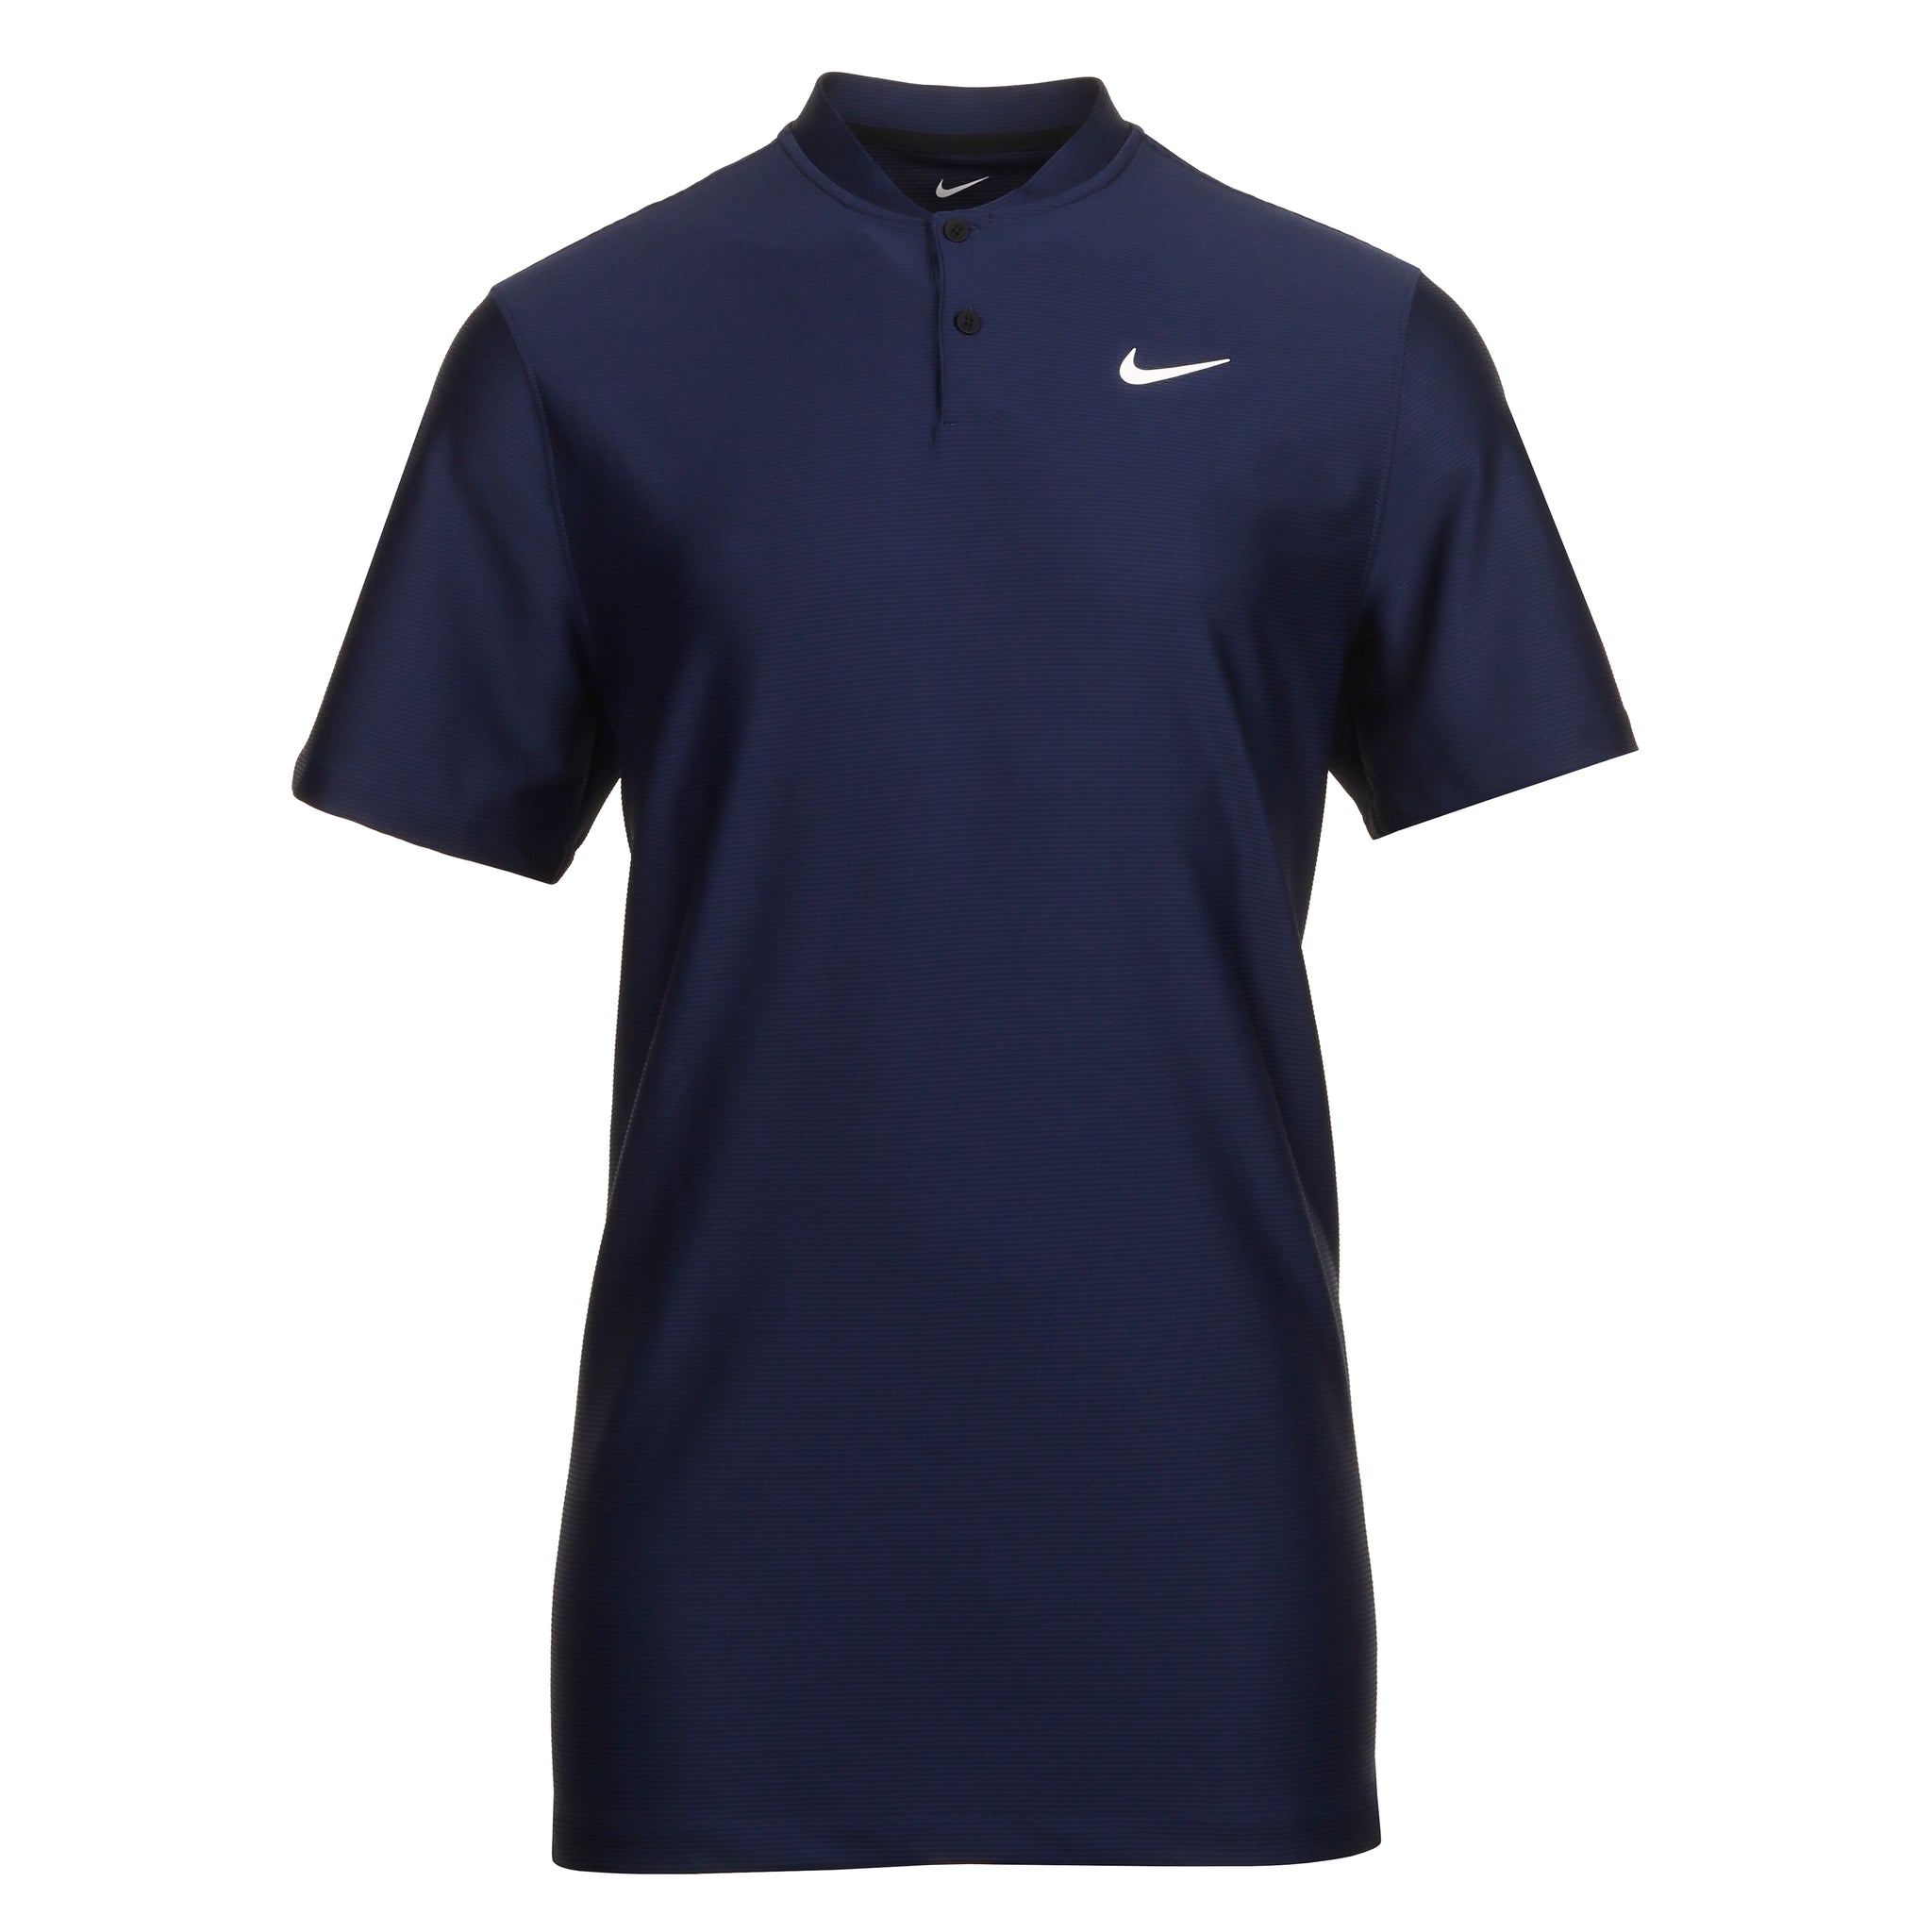 nike-golf-dri-fit-tour-texture-shirt-fj7035-410-midnight-navy